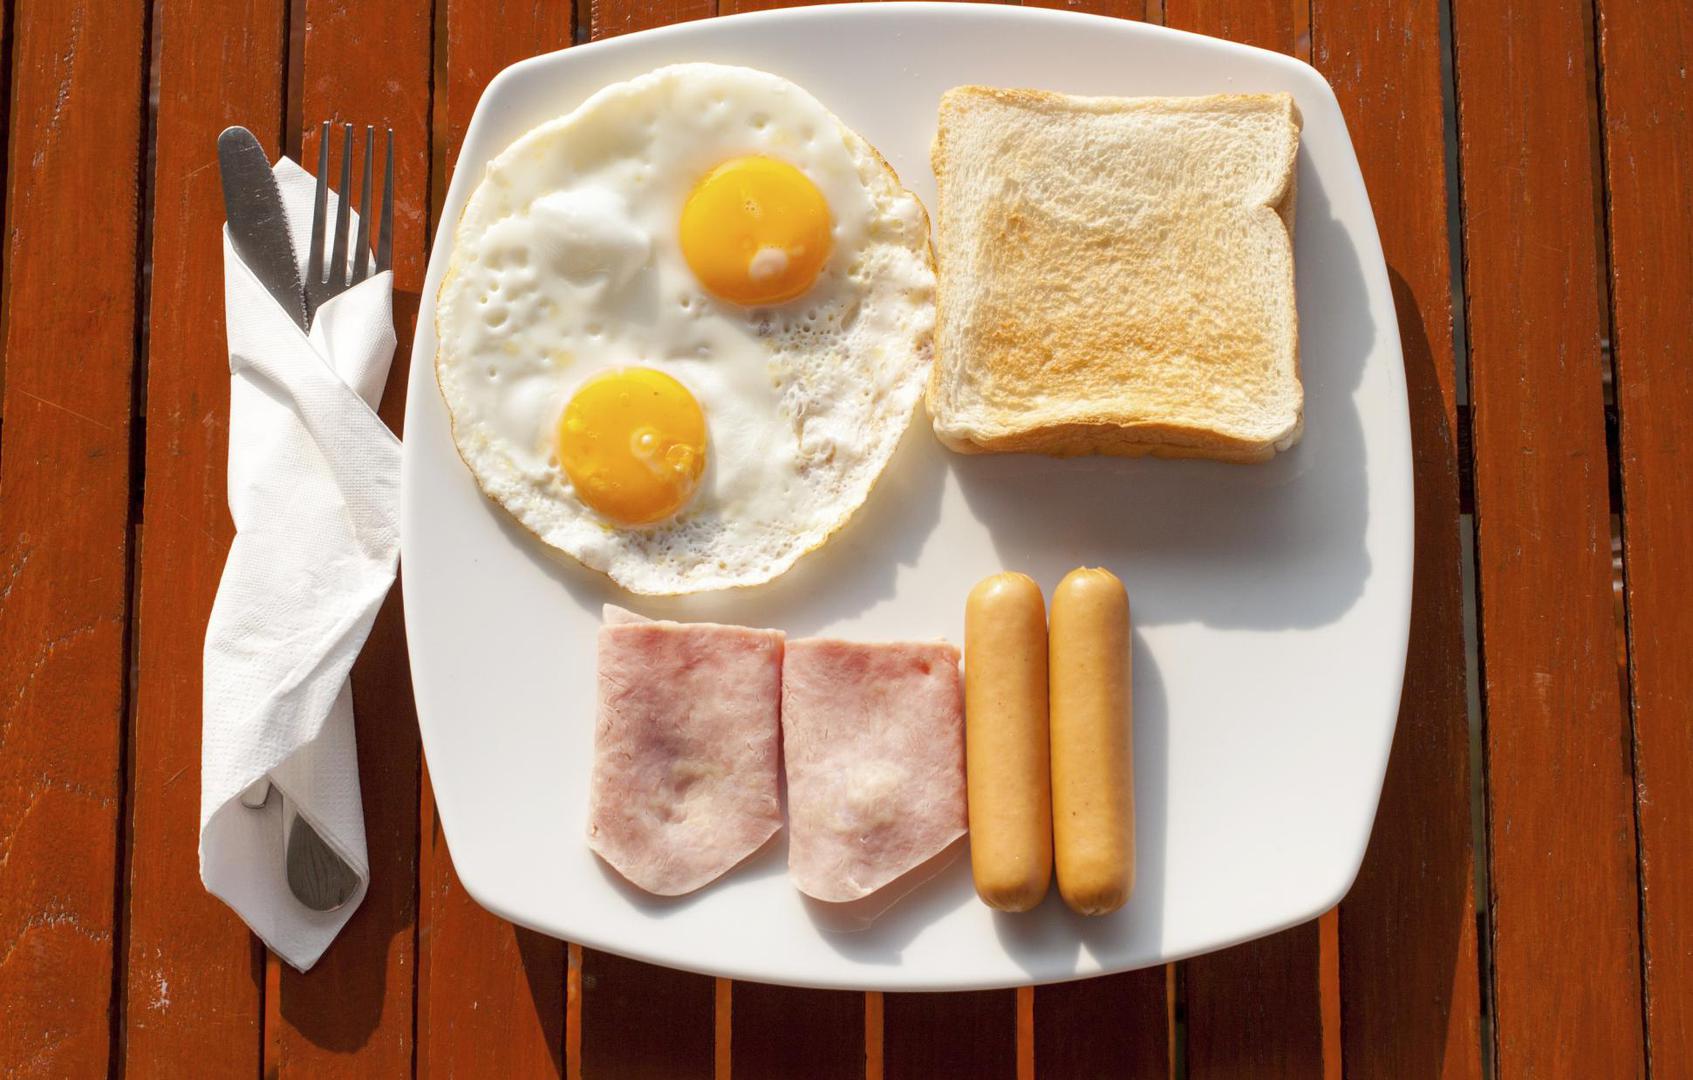 Proteini, vitamini i vlakna ono su što bi svakako trebao sadržavati zdravi doručak. No, većinom biramo za doručak namirnice po navici i okruženju u kojem živimo. U Hrvatskoj nemamo neki "standardni" hrvatski doručak jer svaki dio Hravtske ima svoje tradicije, ali ste vjerojatno čuli za engleski doručak, kontinentalni...